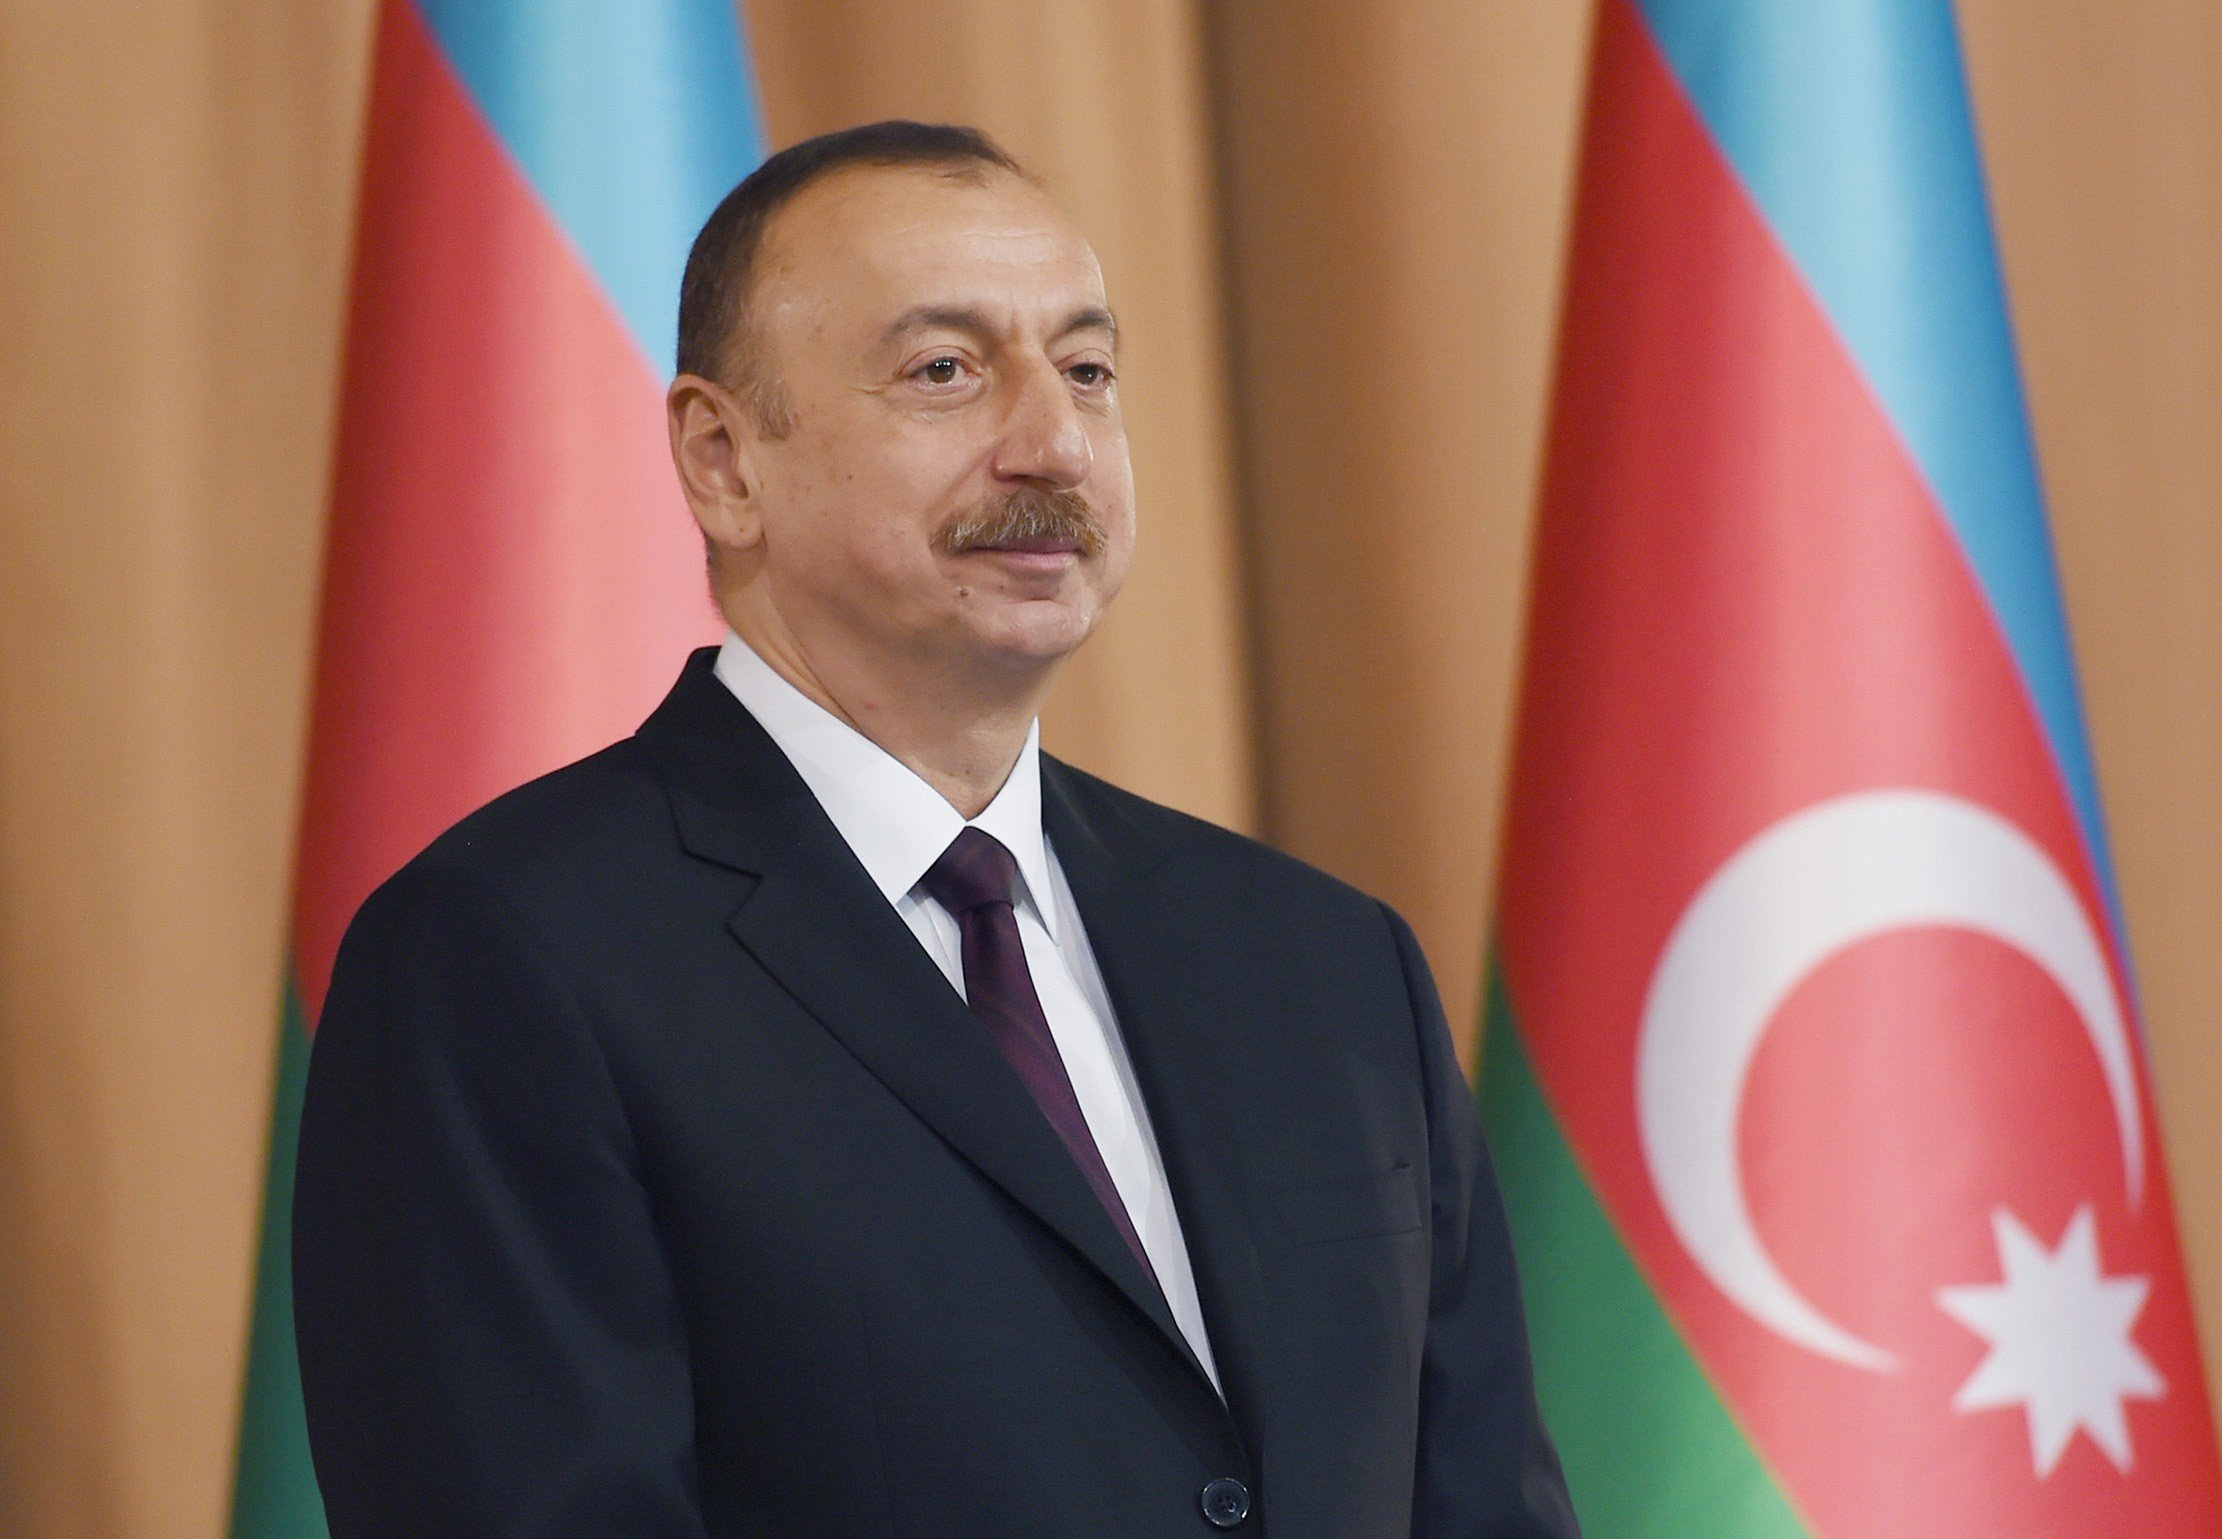 Мировые лидеры поздравляют Президента Ильхама Алиева - ОБНОВЛЕНО